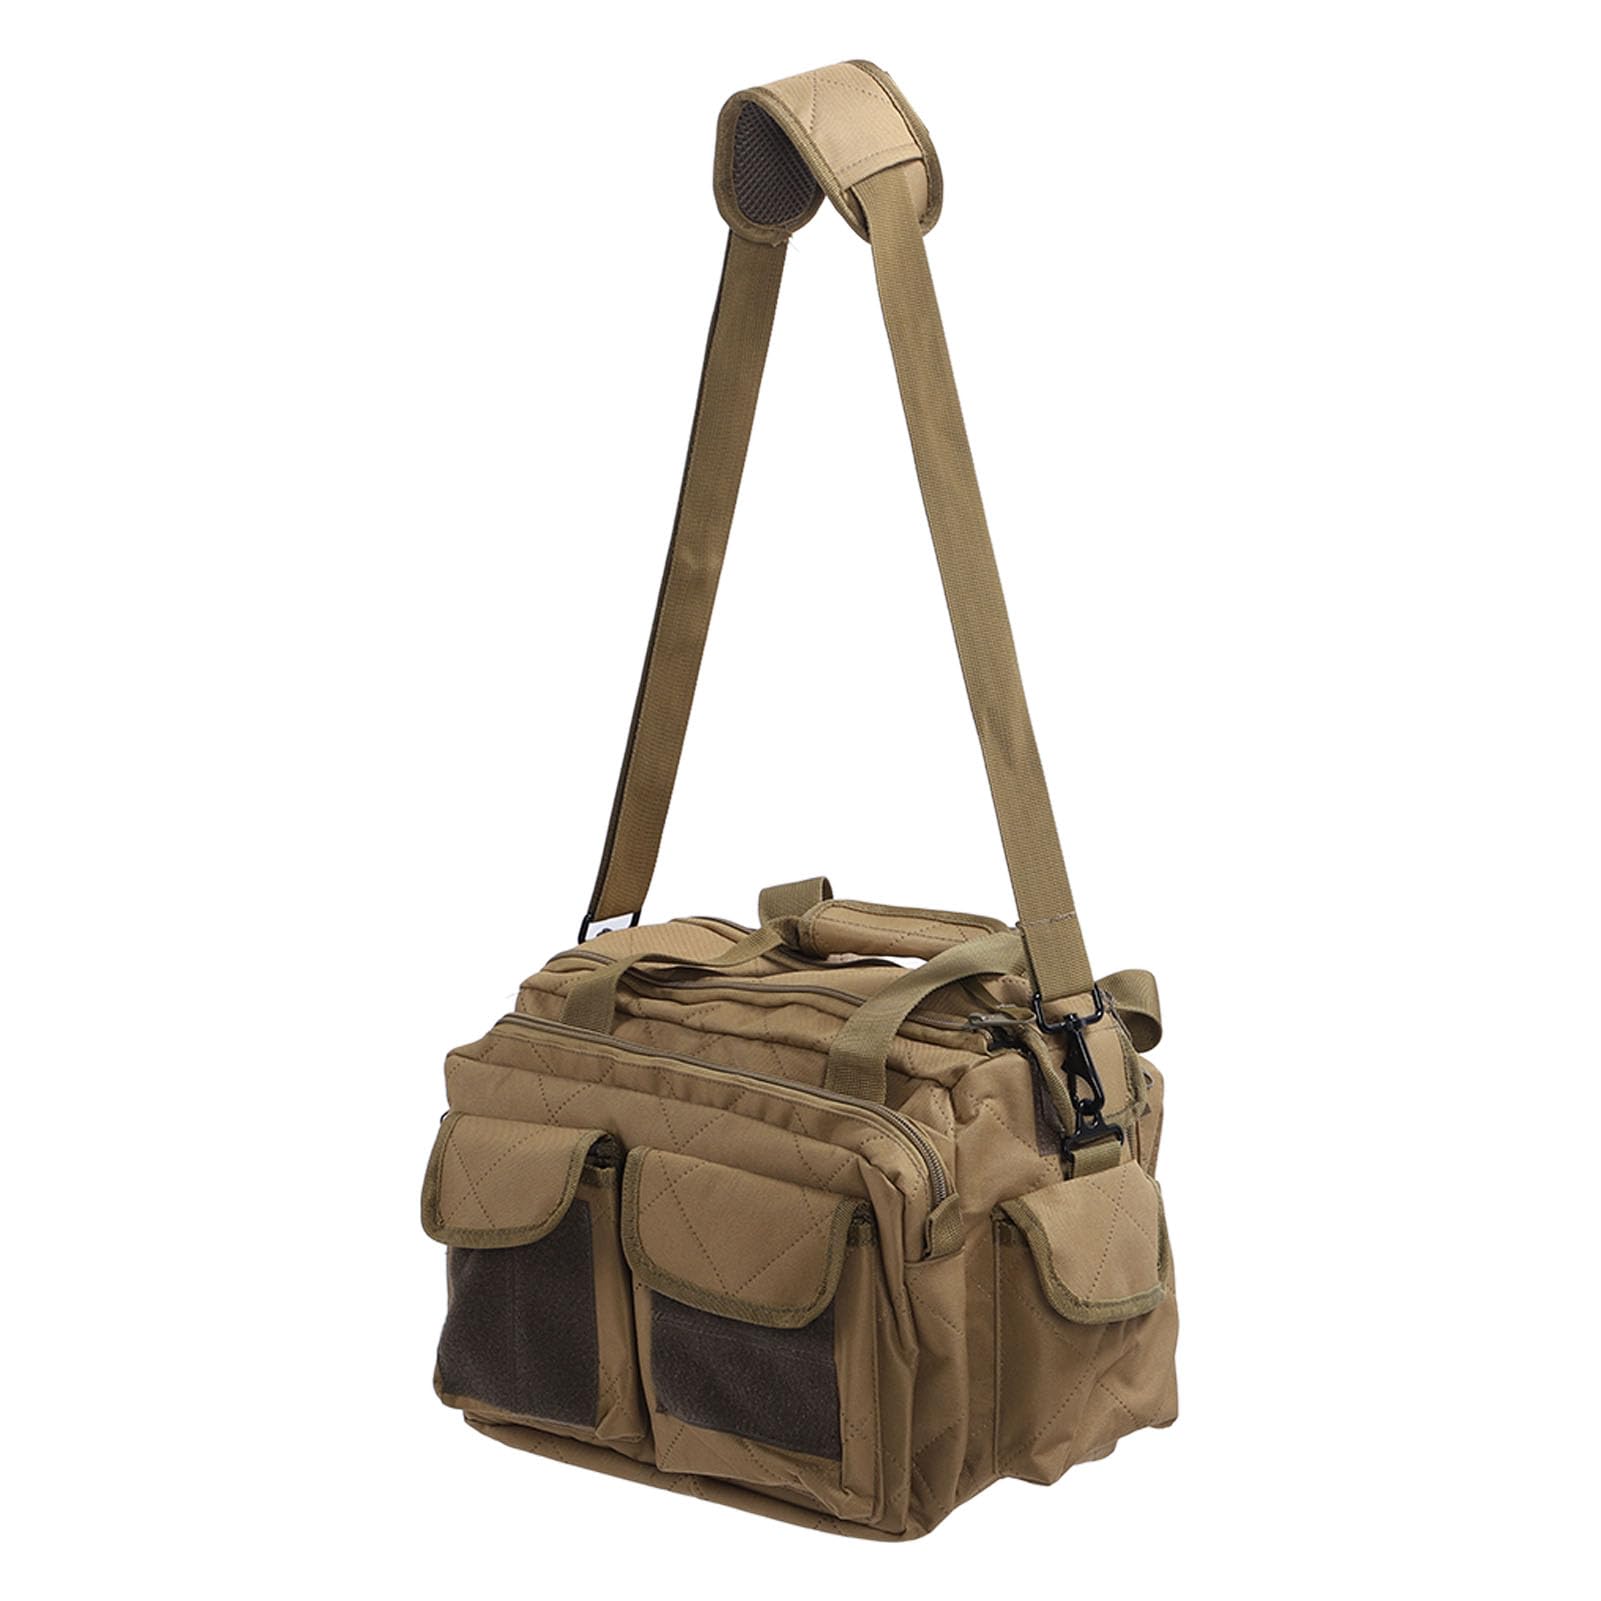 Militärsporttasche, Großes Fassungsvermögen, Bequemer Griff, Verschleißfest, Große Sporttasche für Camping (Khaki)